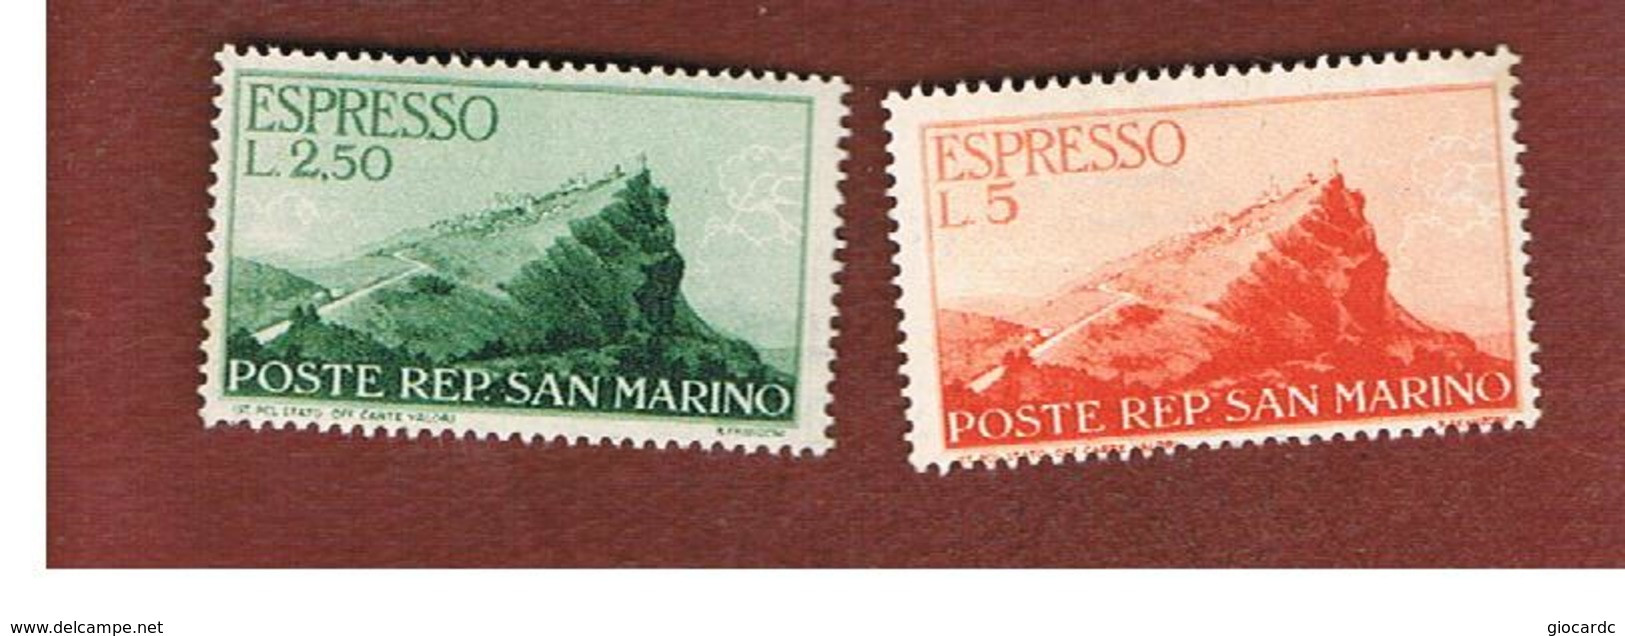 SAN MARINO - UNIF. E11.E12 ESPRESSO - 1945  VEDUTA (SERIE COMPLETA DI 2) -  MINT** - Francobolli Per Espresso